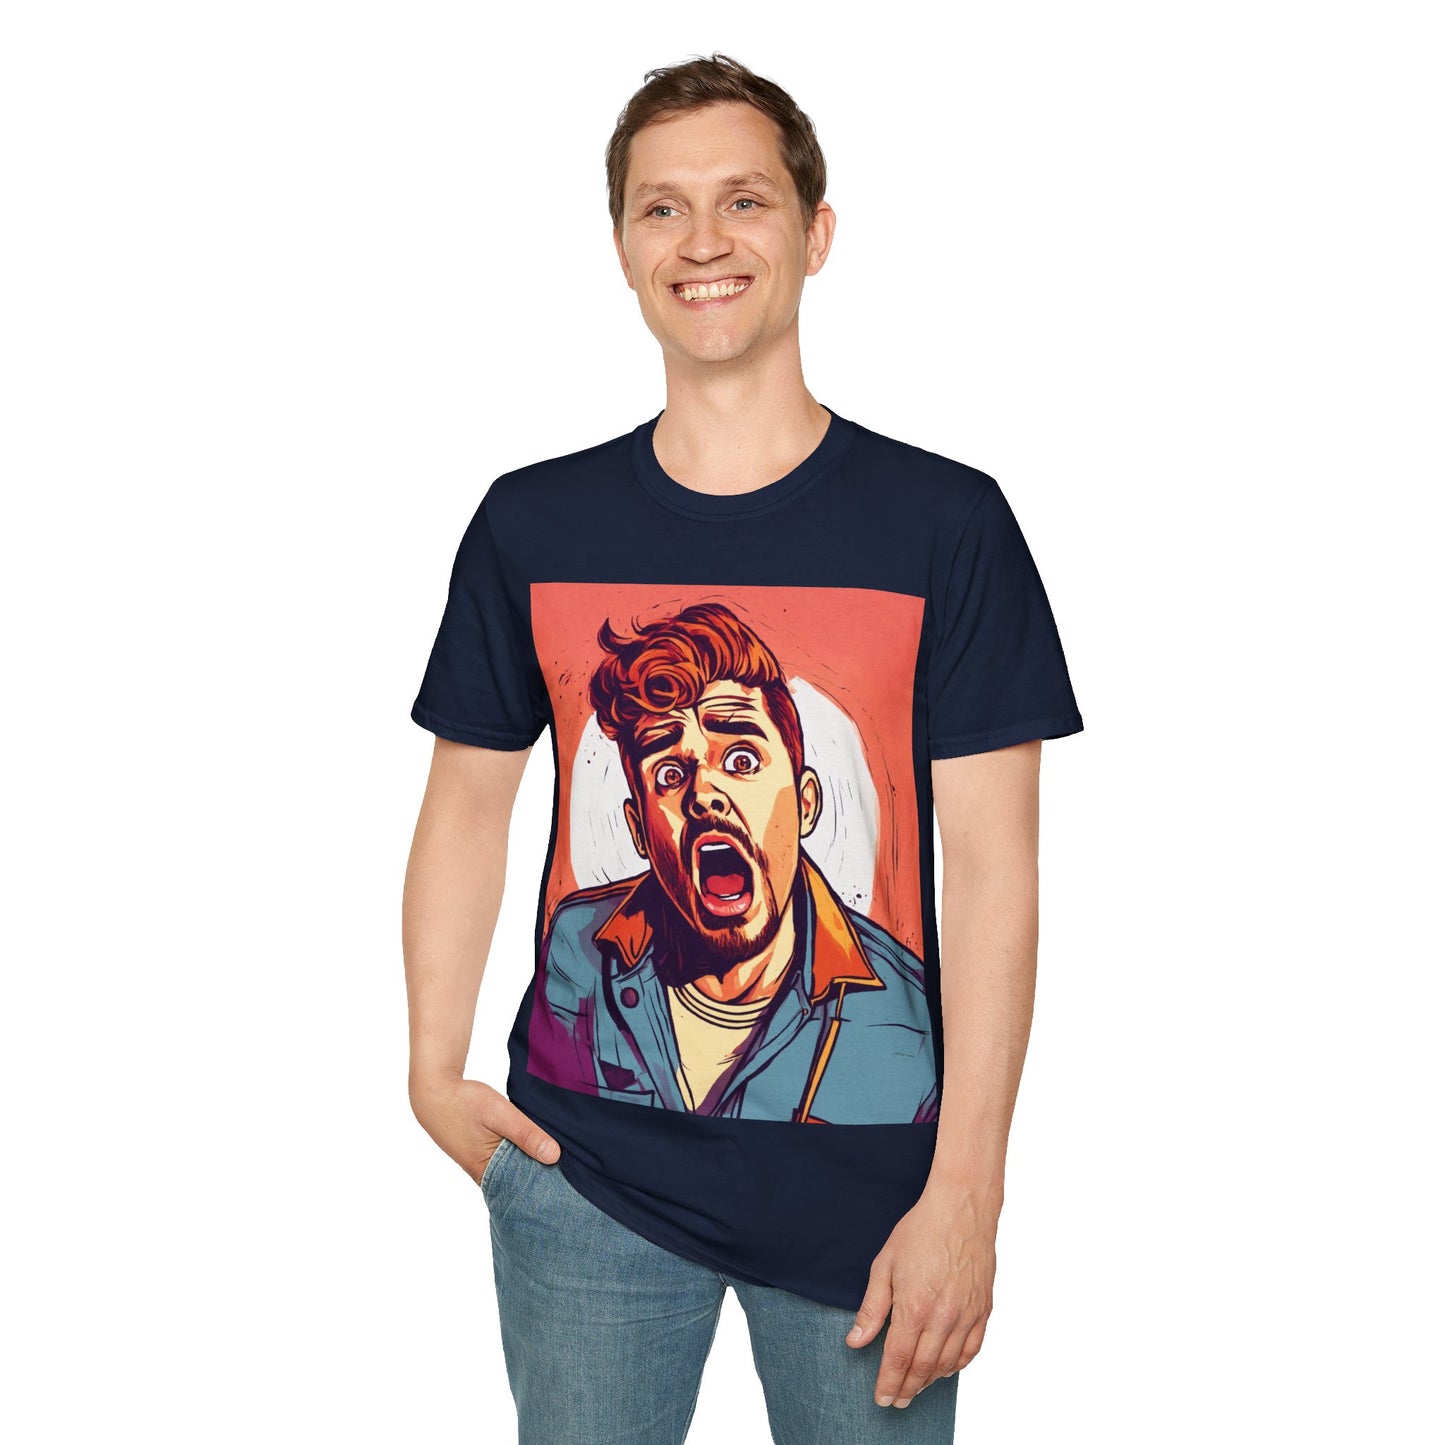 Shocking man # 2 Unisex Softstyle T-Shirt